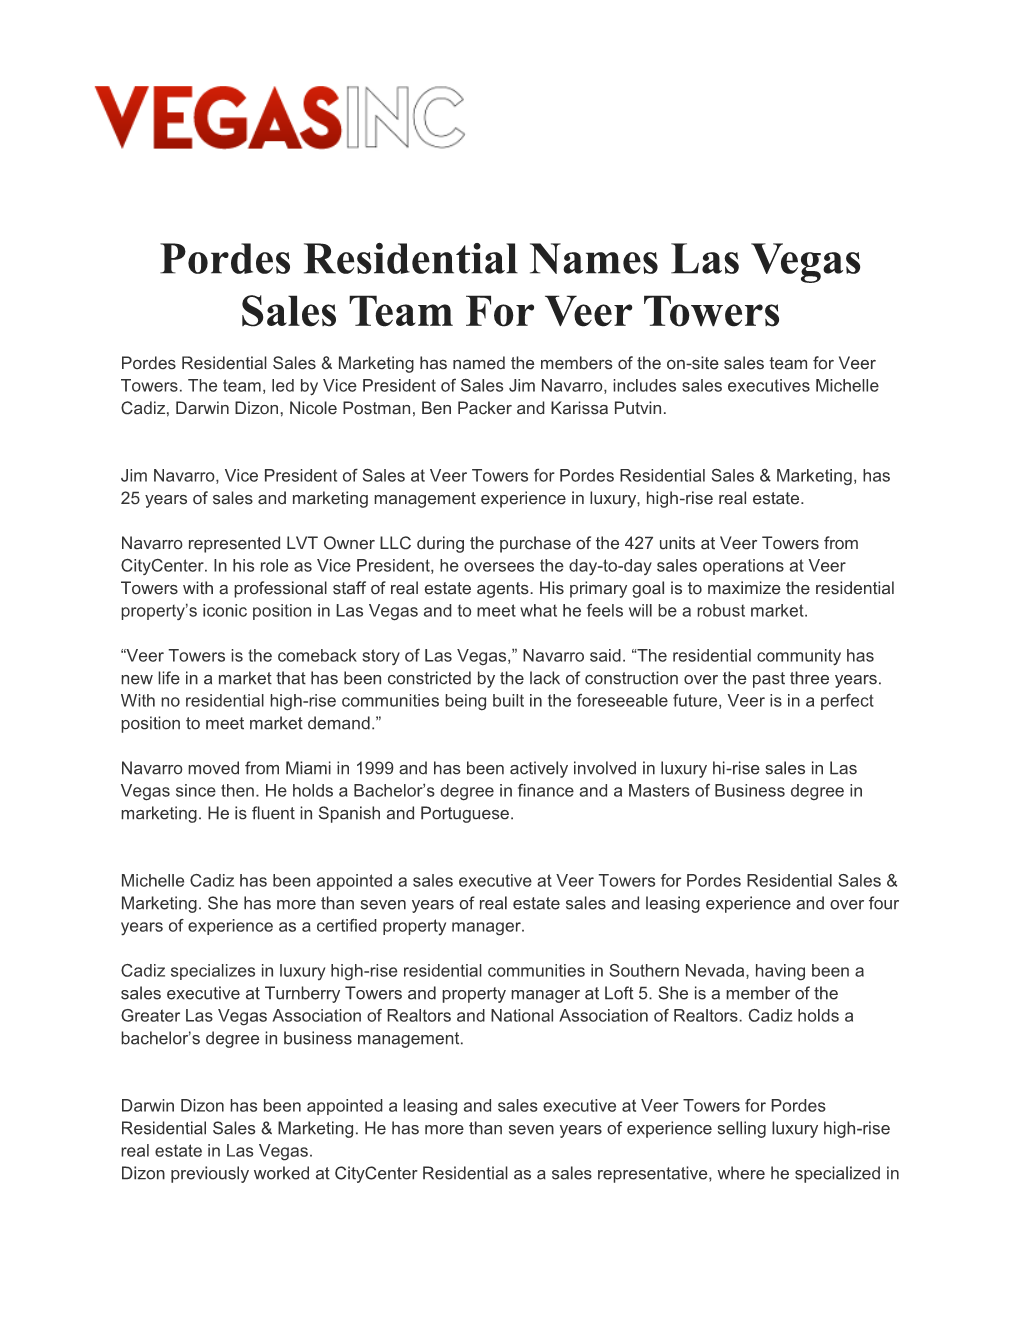 Pordes Residential Names Las Vegas Sales Team for Veer Towers